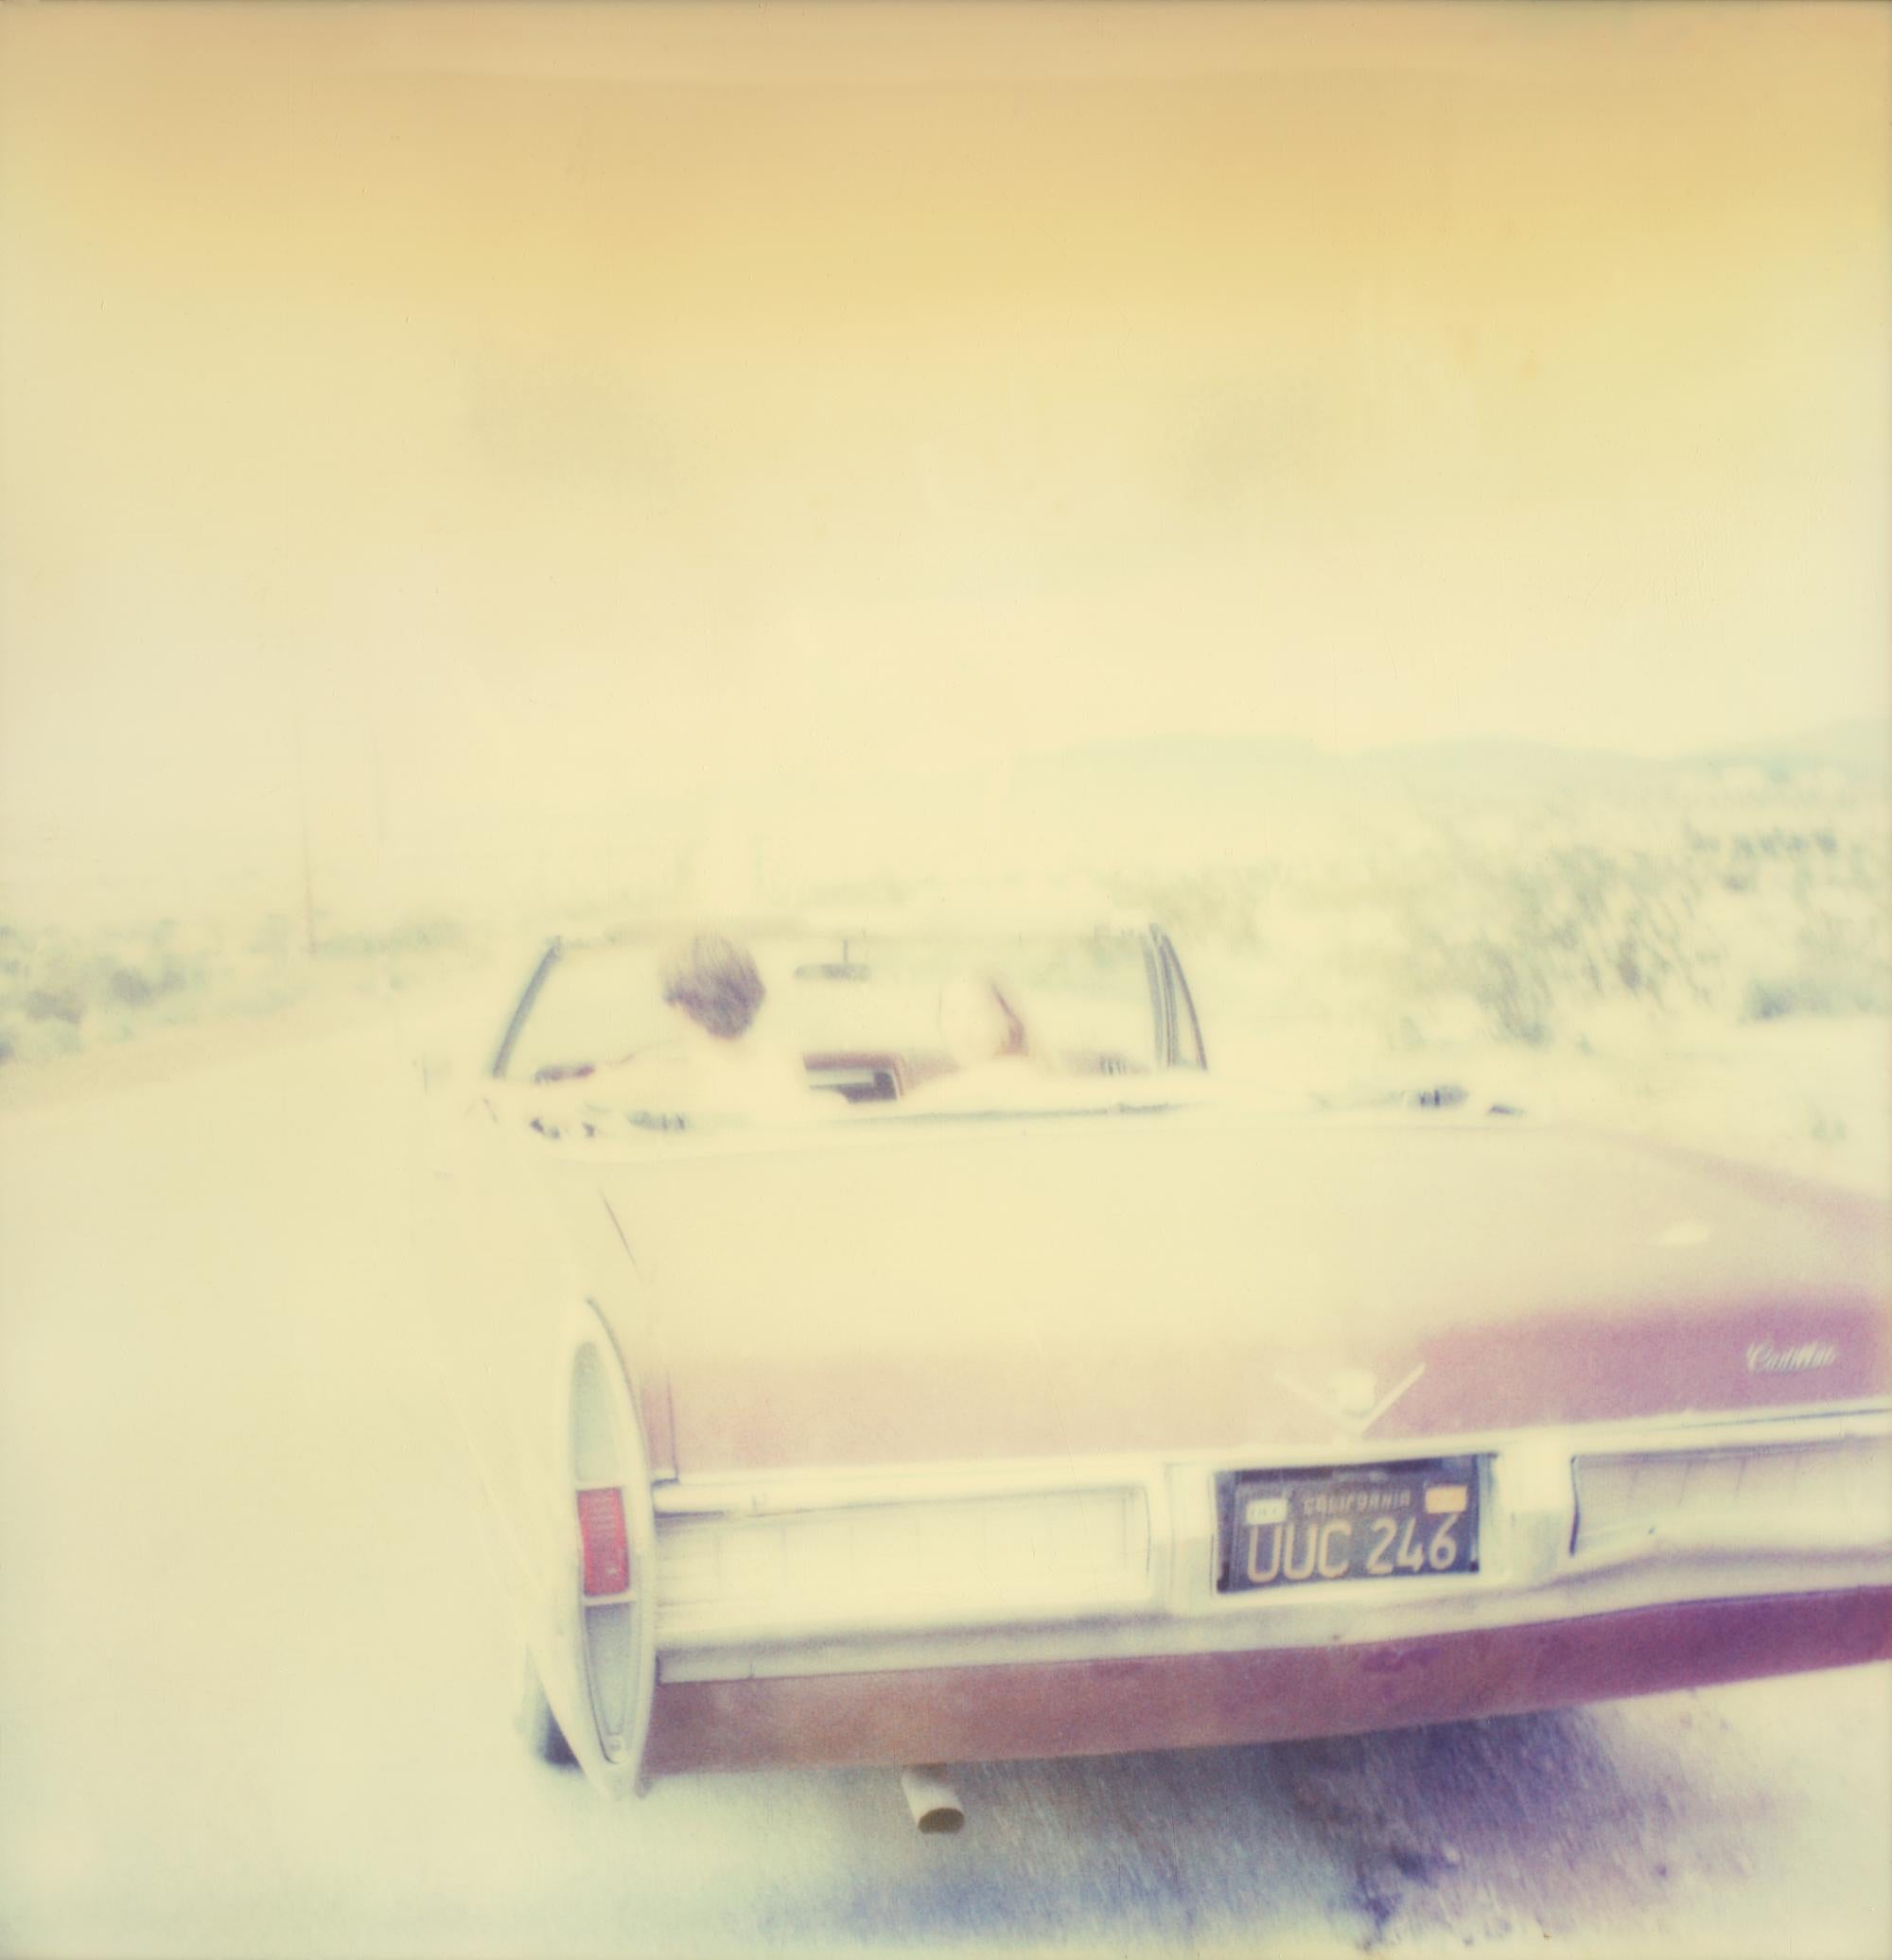 Leaving III (Sidewinder) - Polaroid, 21. Jahrhundert, Contemporary – Photograph von Stefanie Schneider